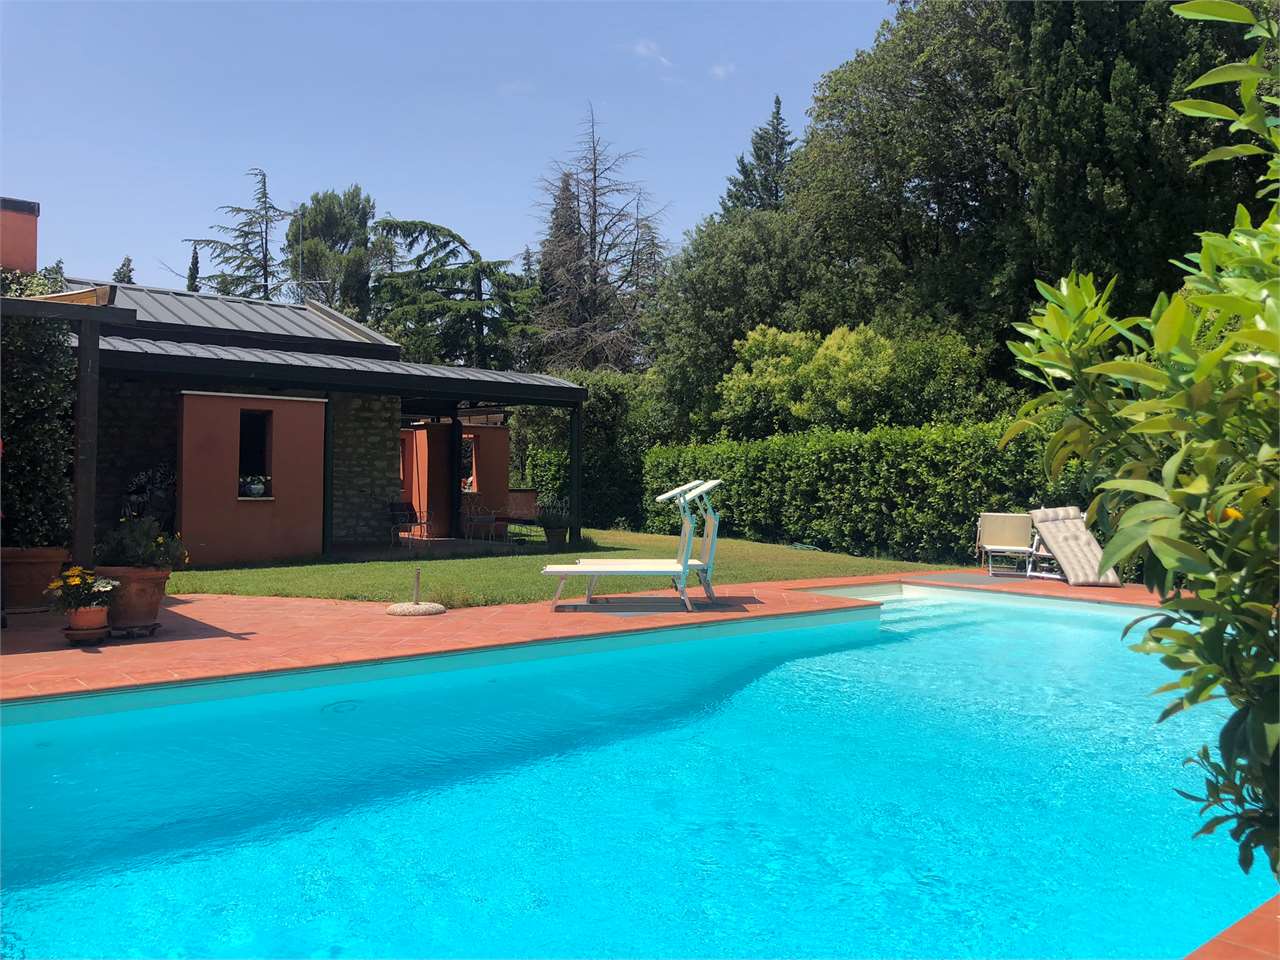 Perugia Villa Signorile con piscina